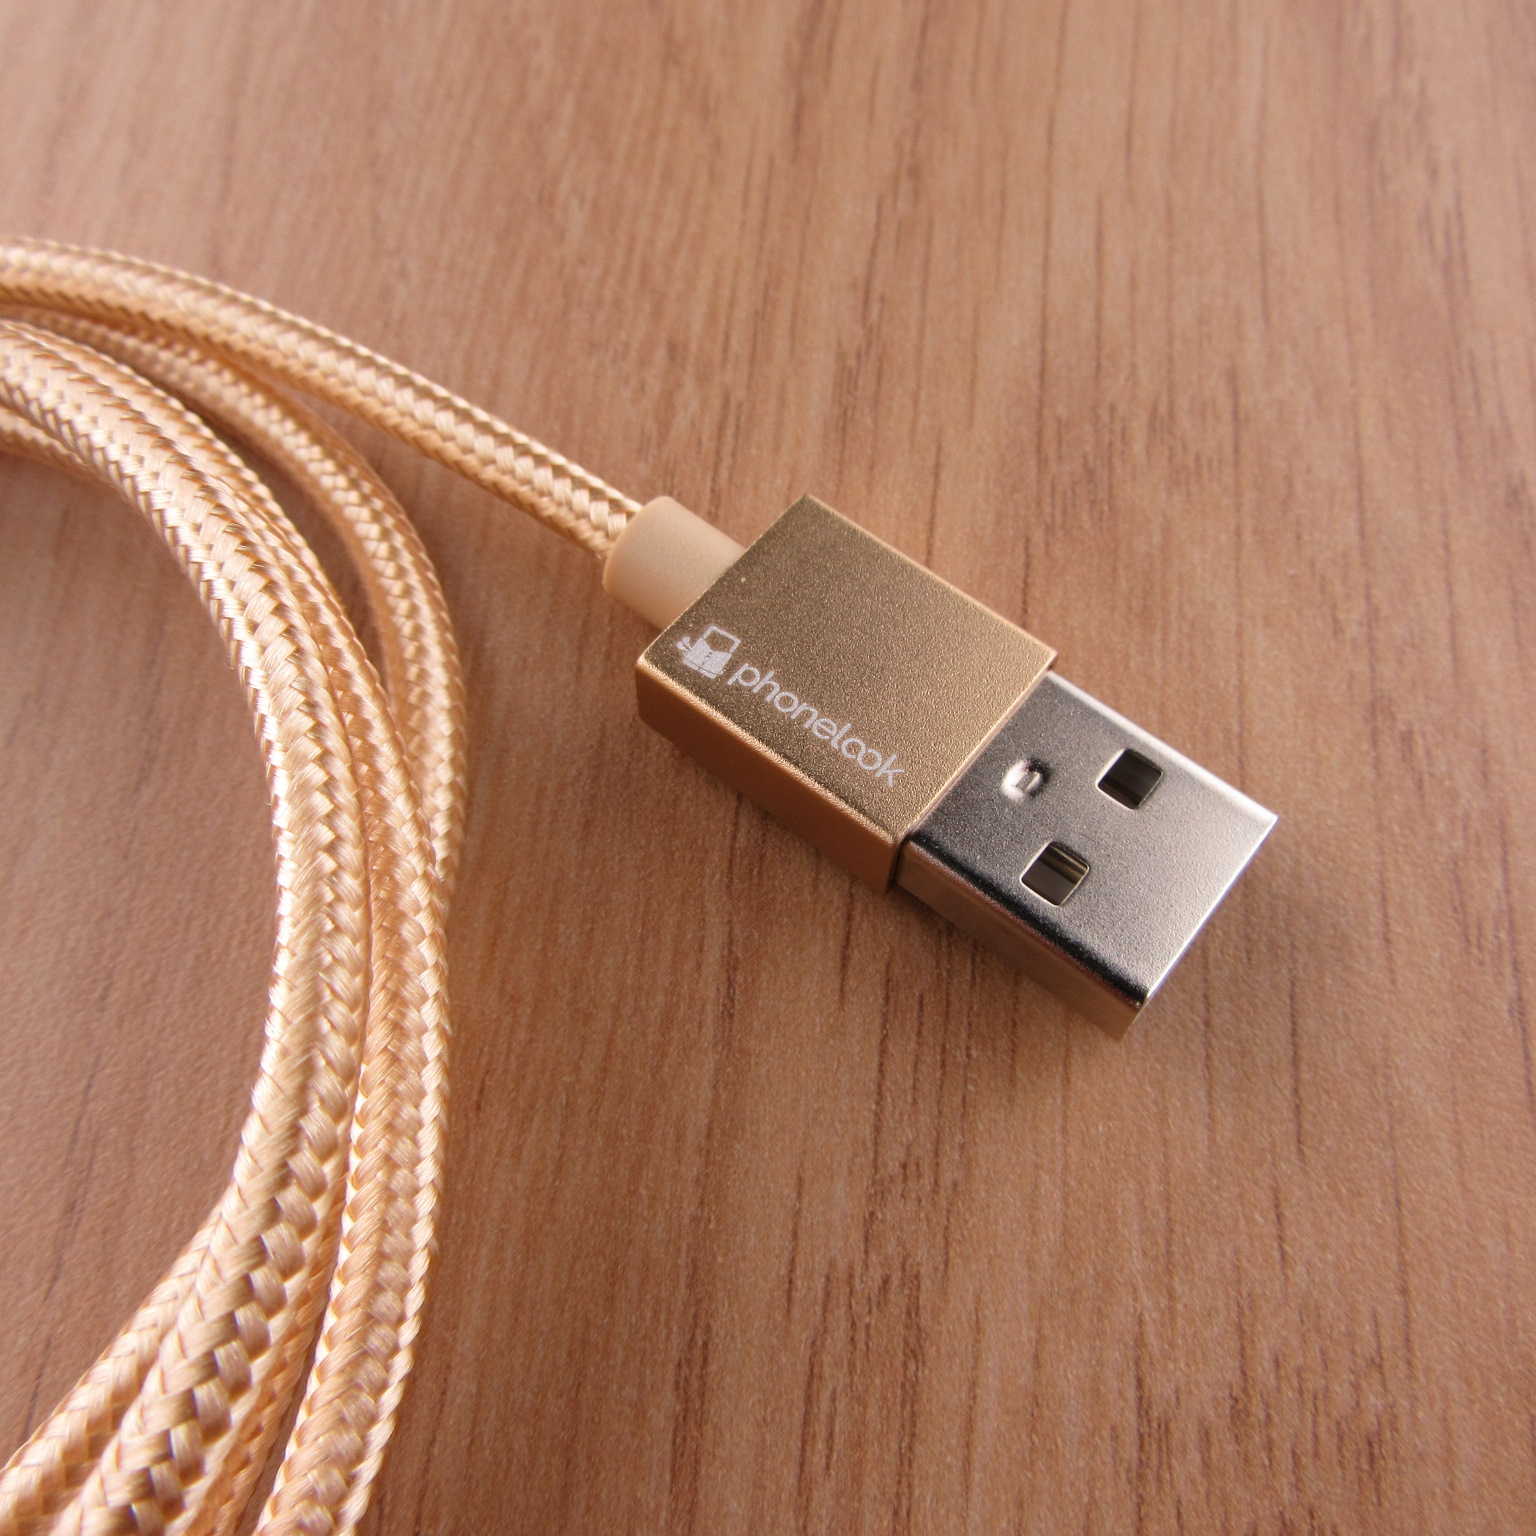 Câble chargeur (1.5 m) USB-C vers USB-C - Nylon PhoneLook - Rose clair -  Acheter sur PhoneLook